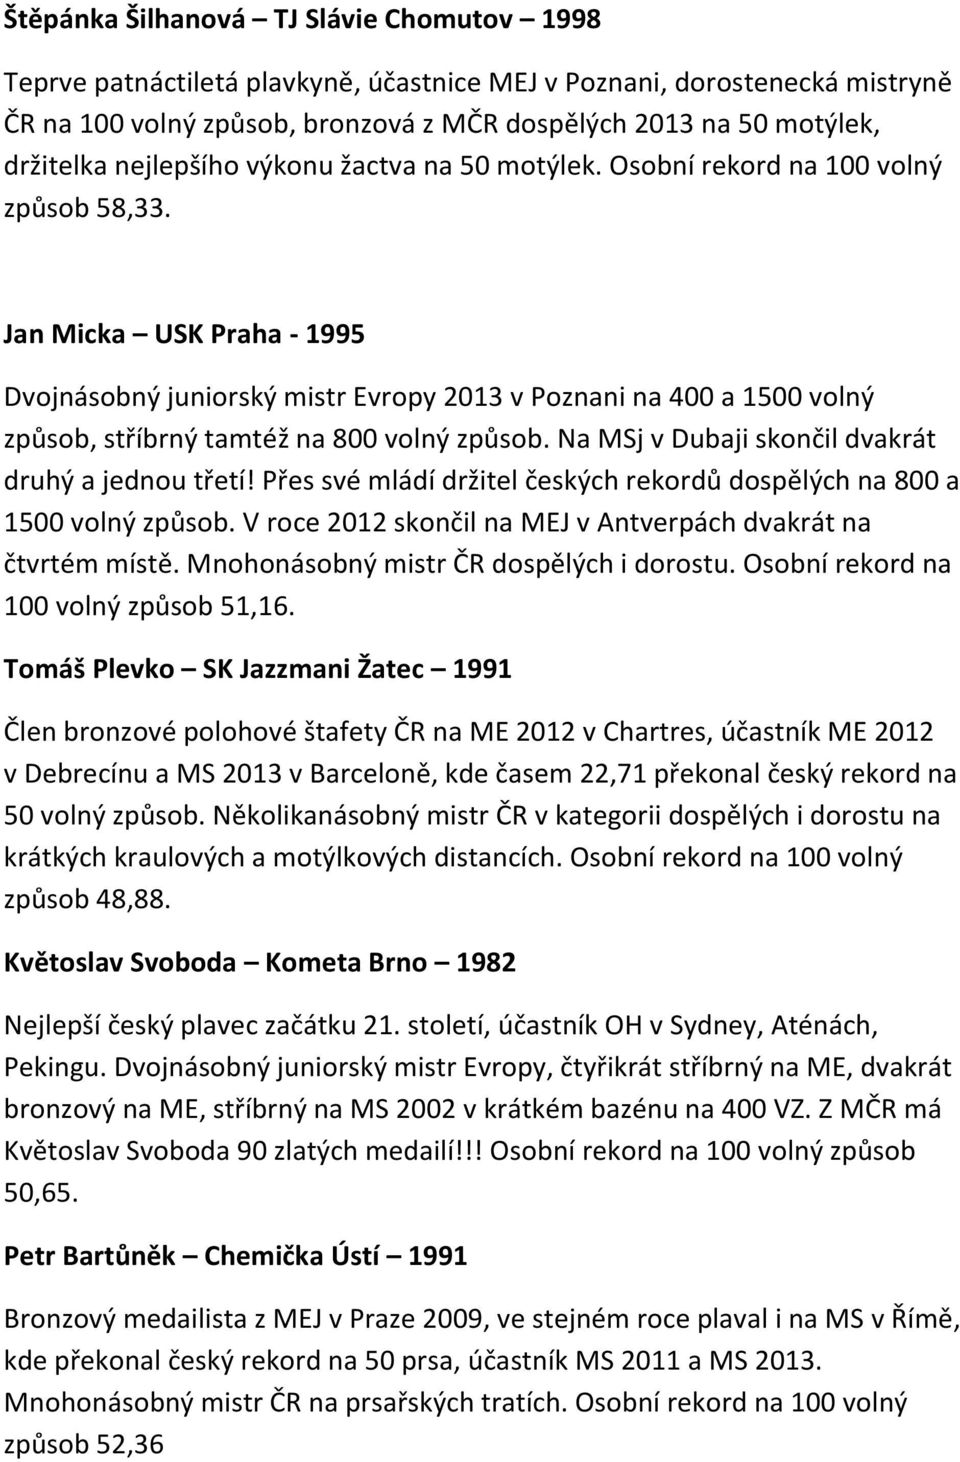 Jan Micka USK Praha - 1995 Dvojnásobný juniorský mistr Evropy 2013 v Poznani na 400 a 1500 volný způsob, stříbrný tamtéž na 800 volný způsob. Na MSj v Dubaji skončil dvakrát druhý a jednou třetí!